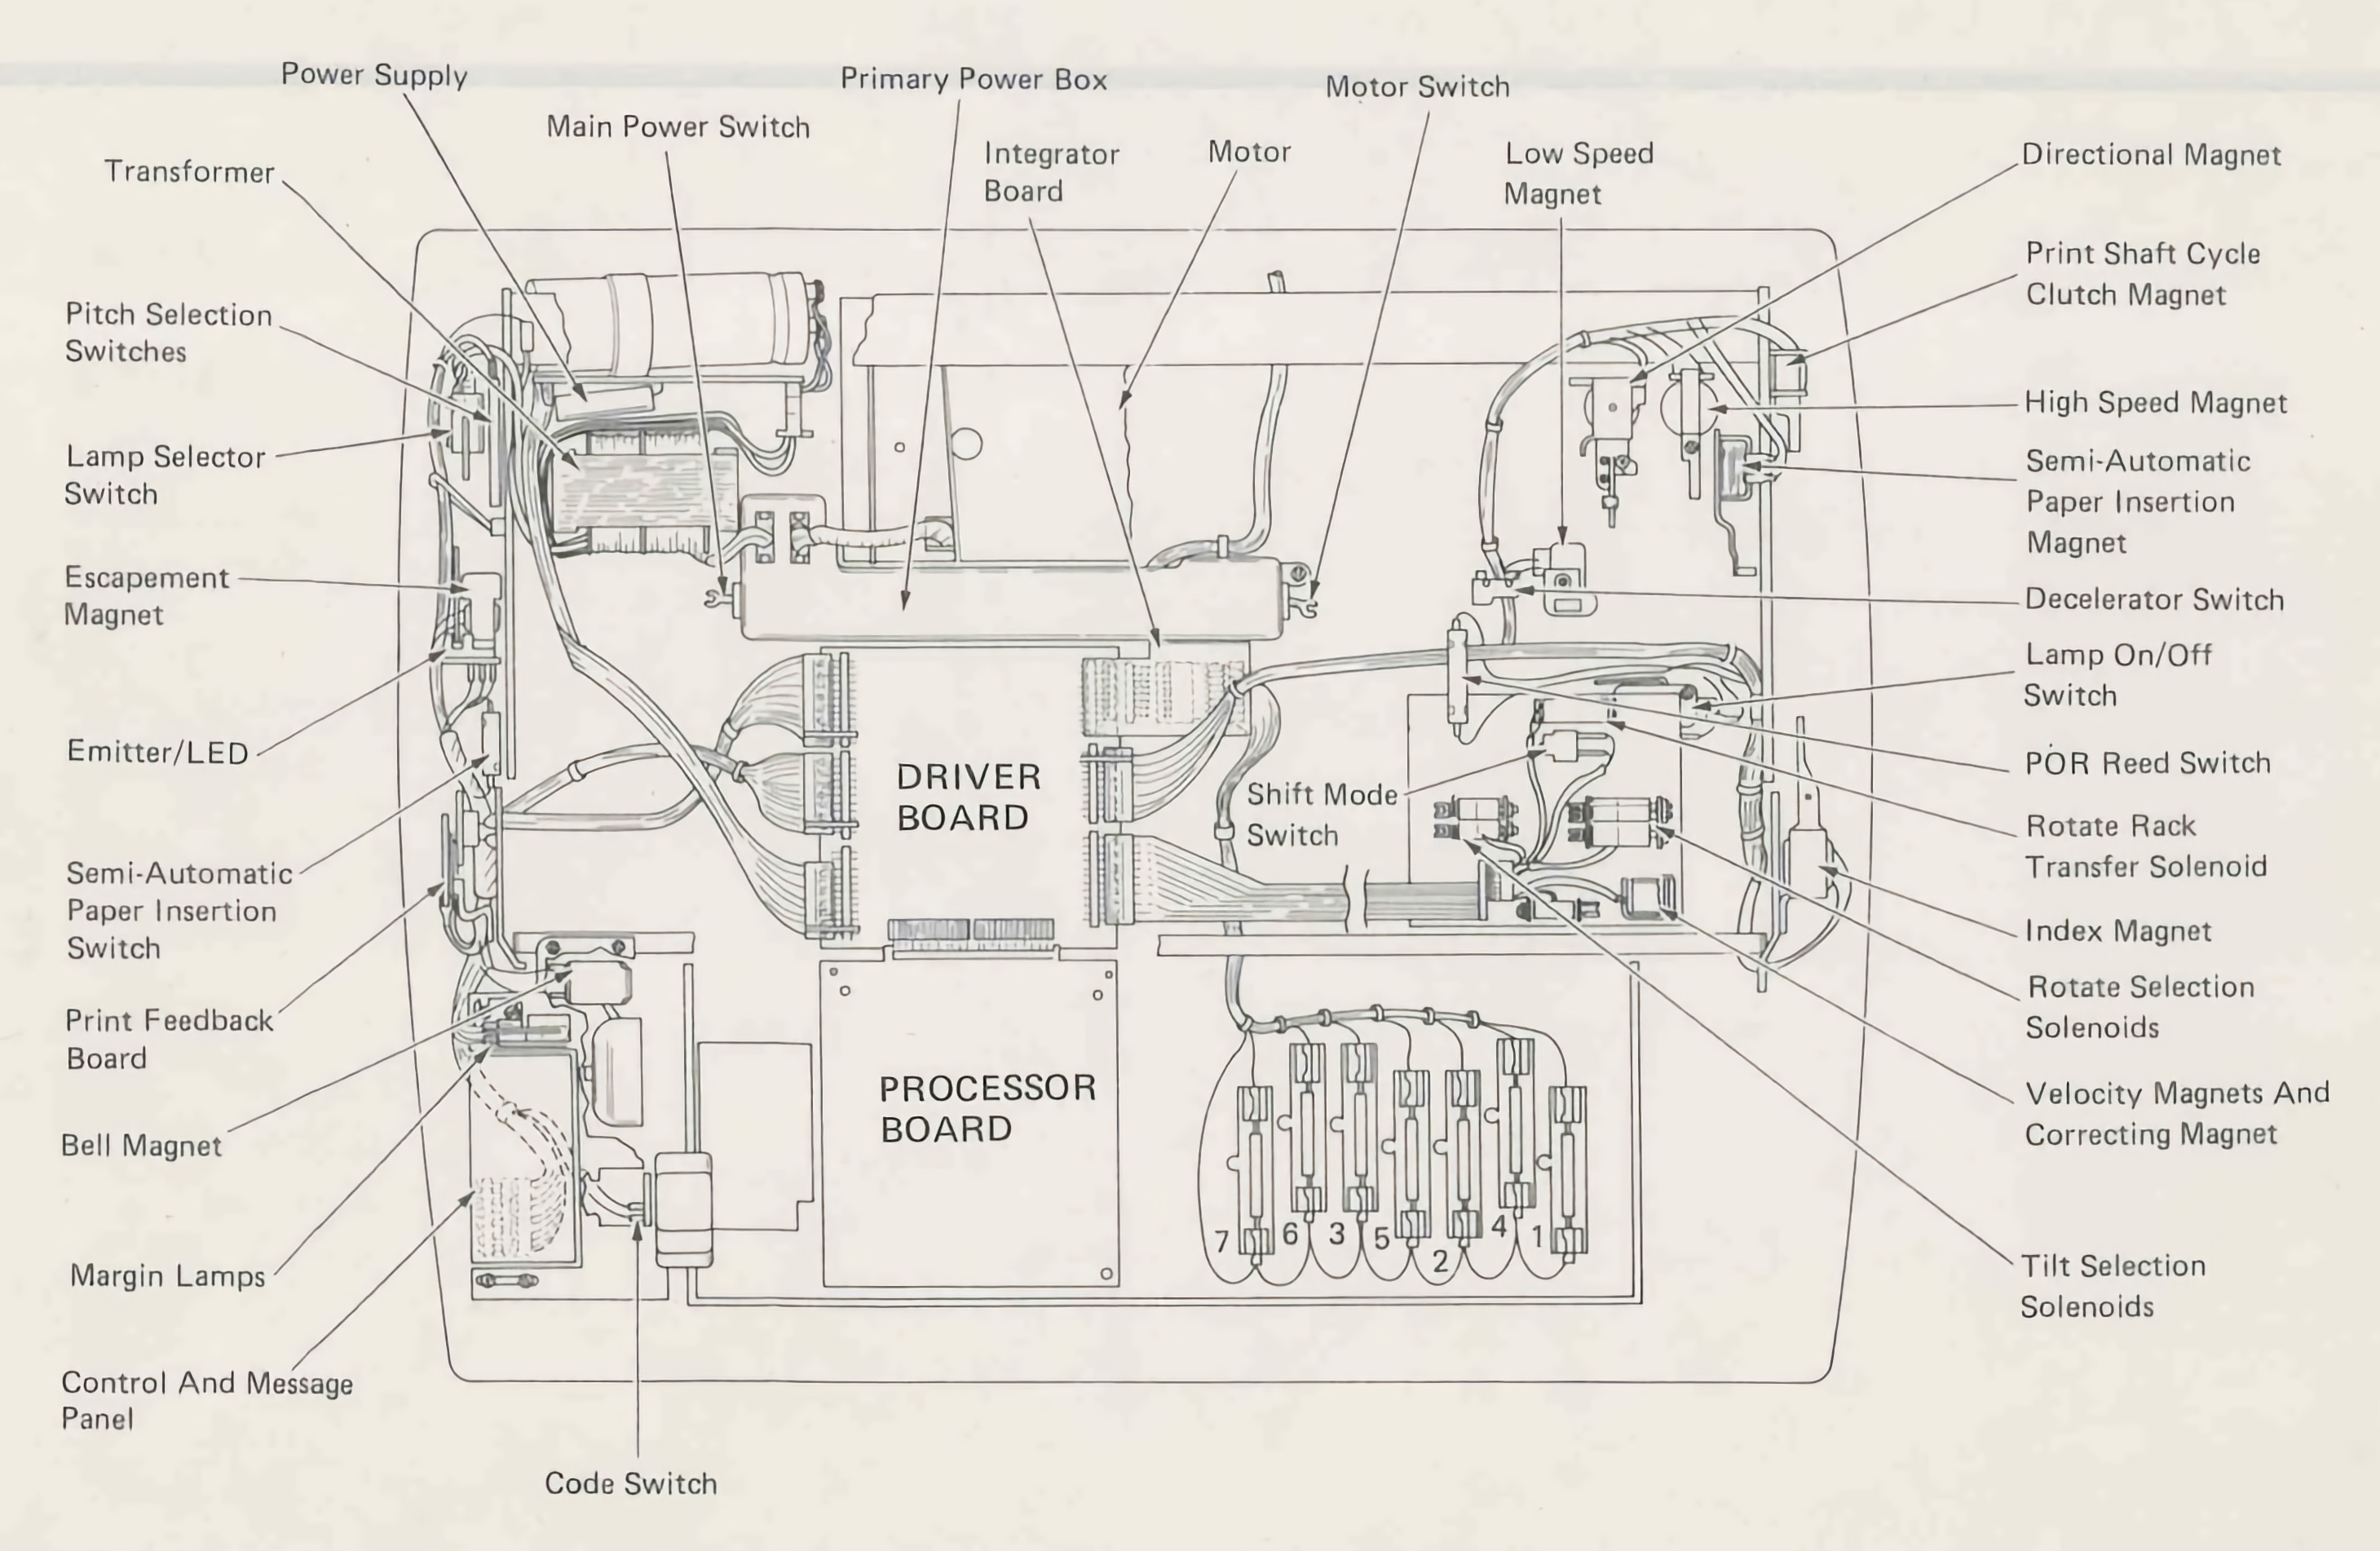 Layout of the IBM Electronic Typewriter 75